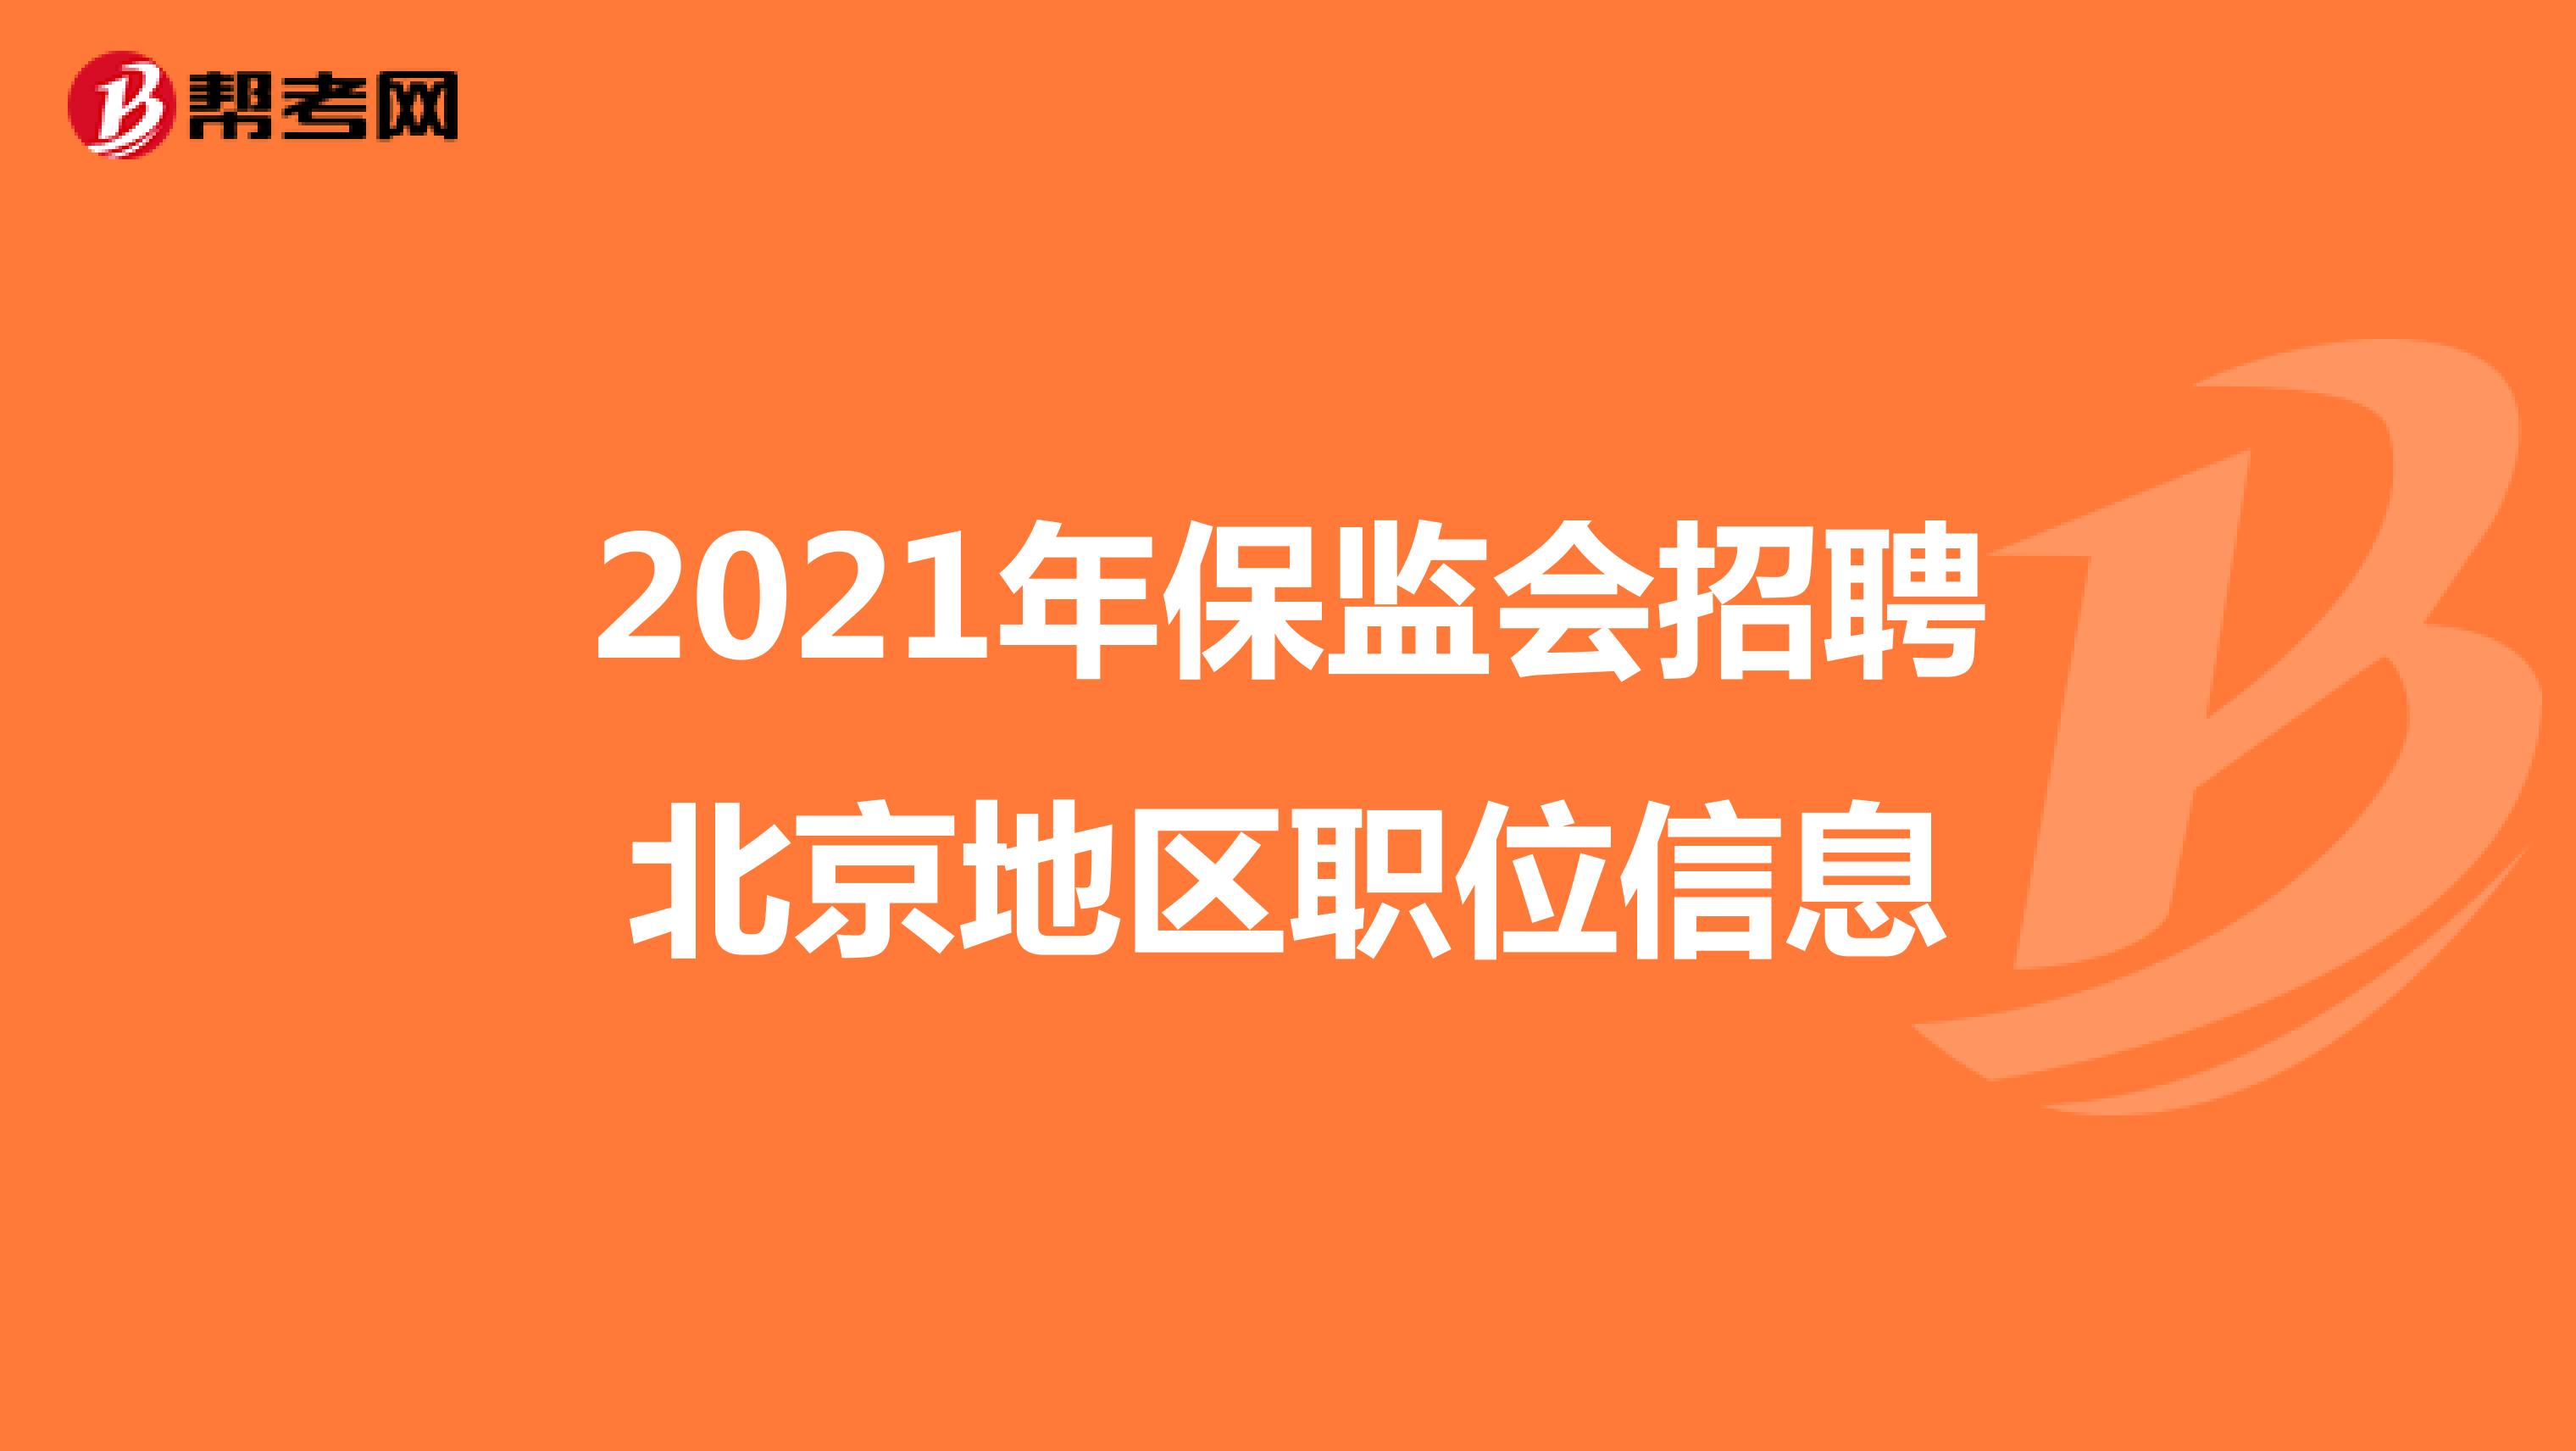 2021年保监会招聘北京地区职位信息